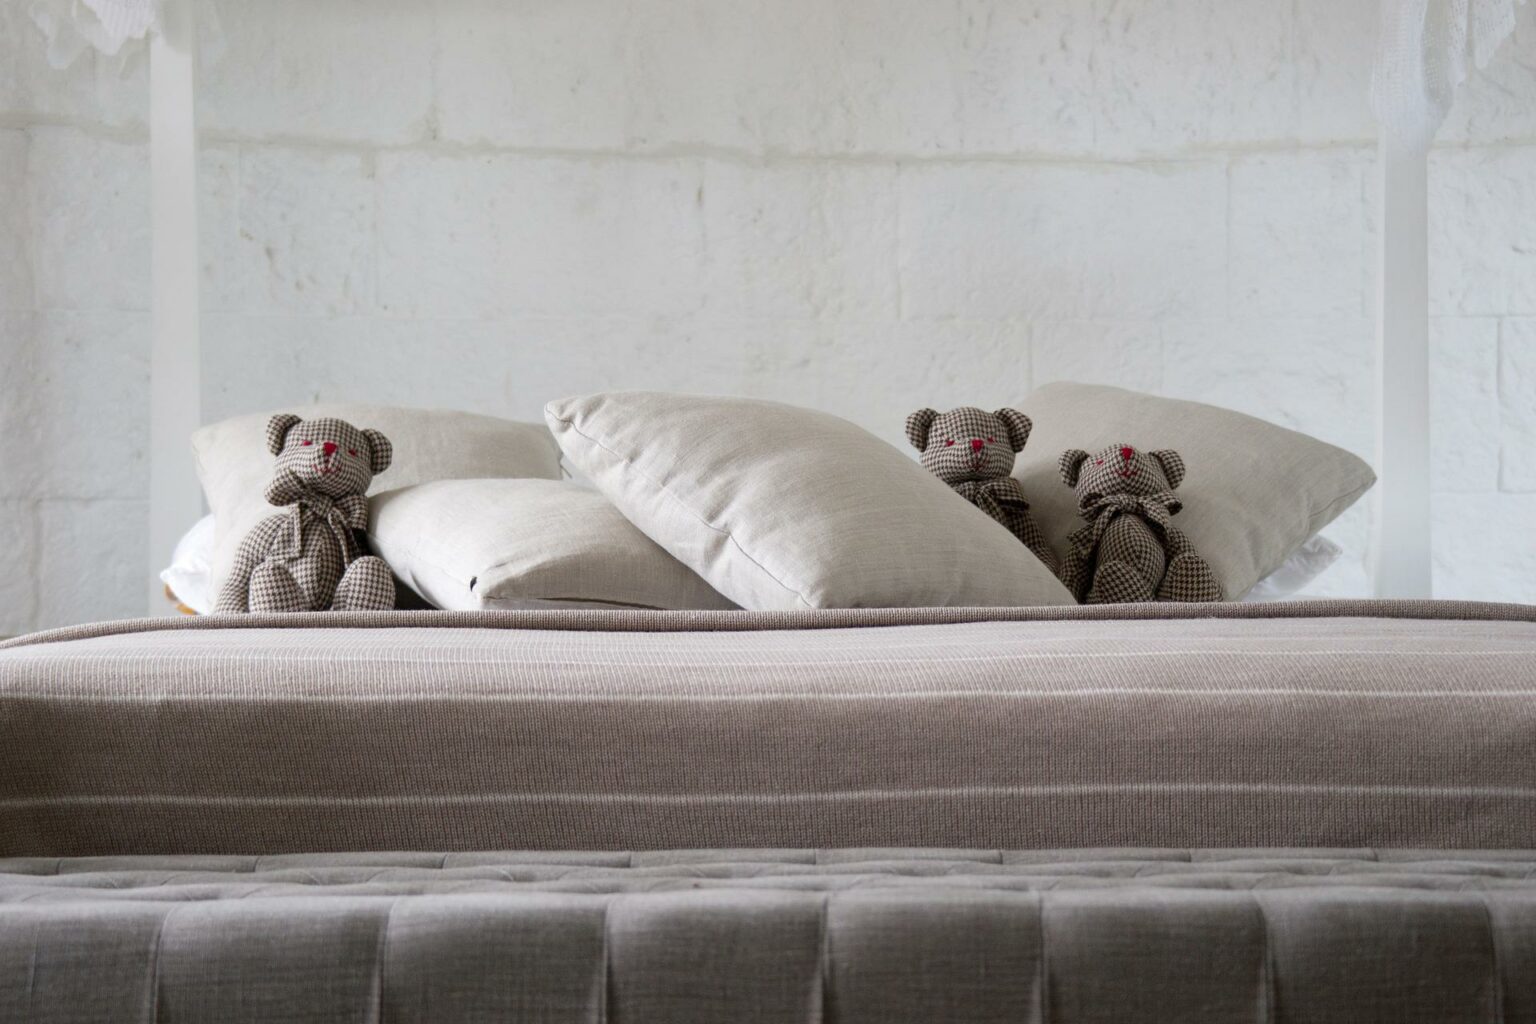 bear mattress in store